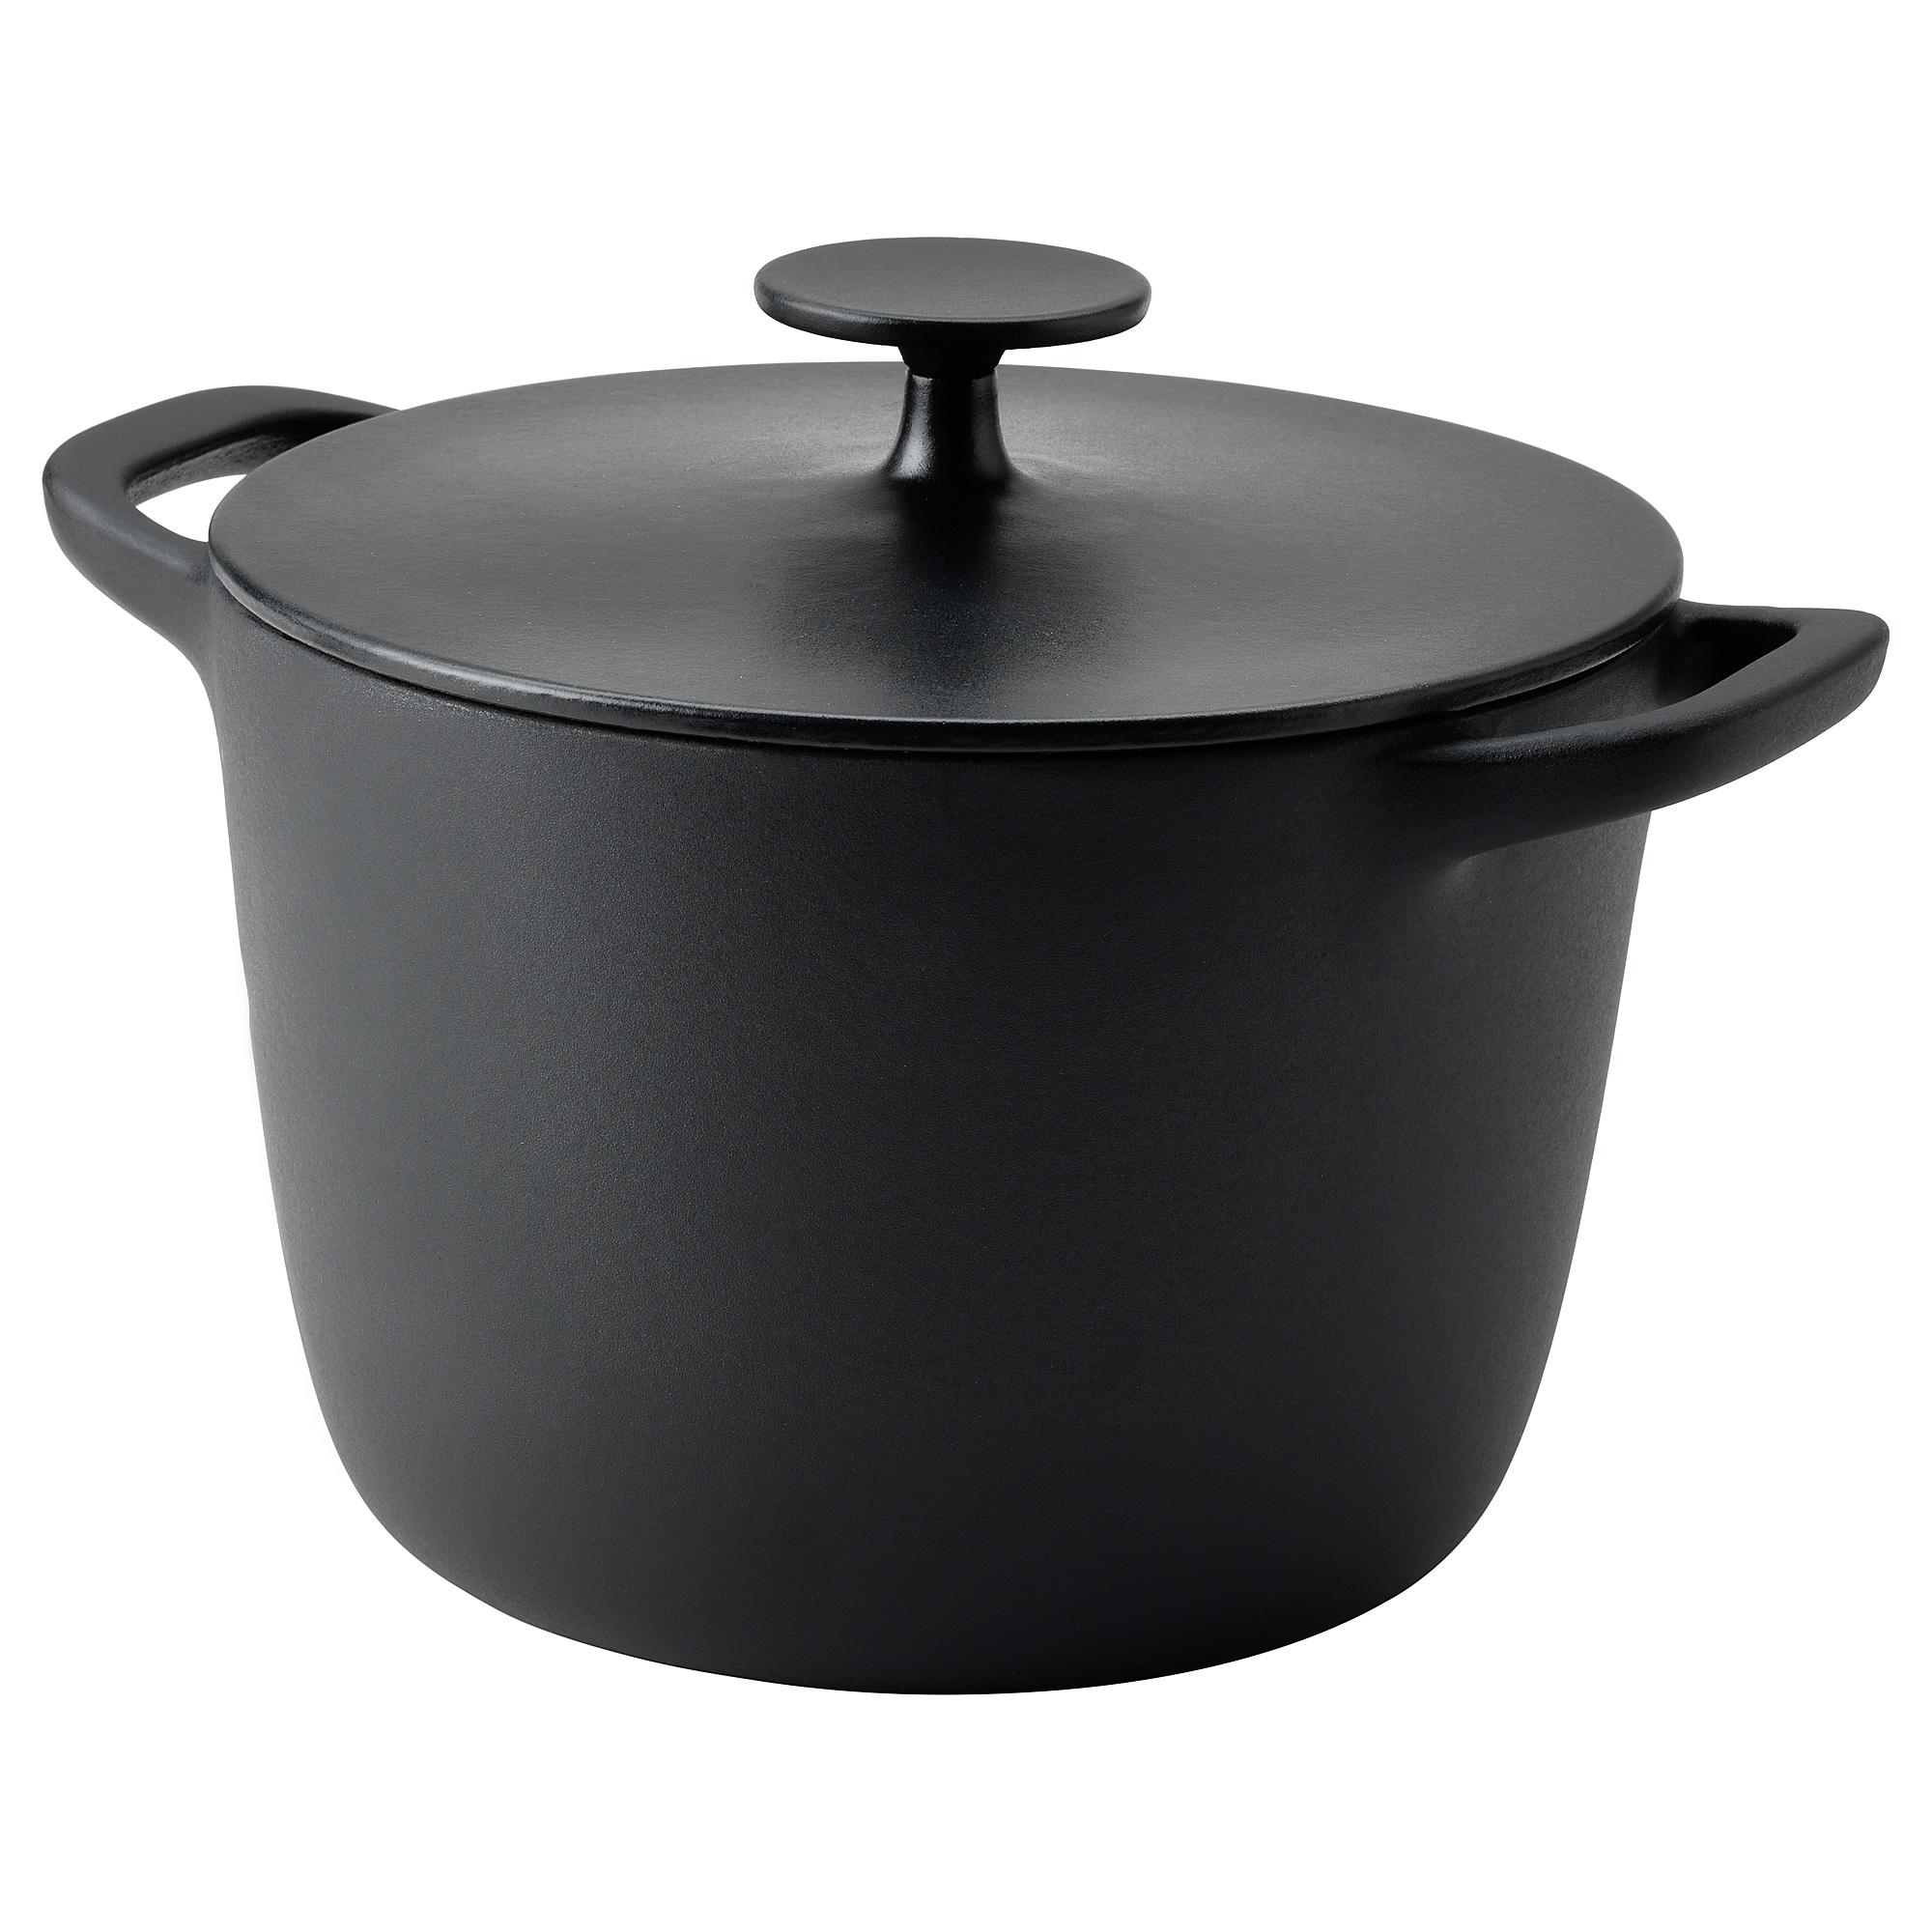 VARDAGEN pot with lid